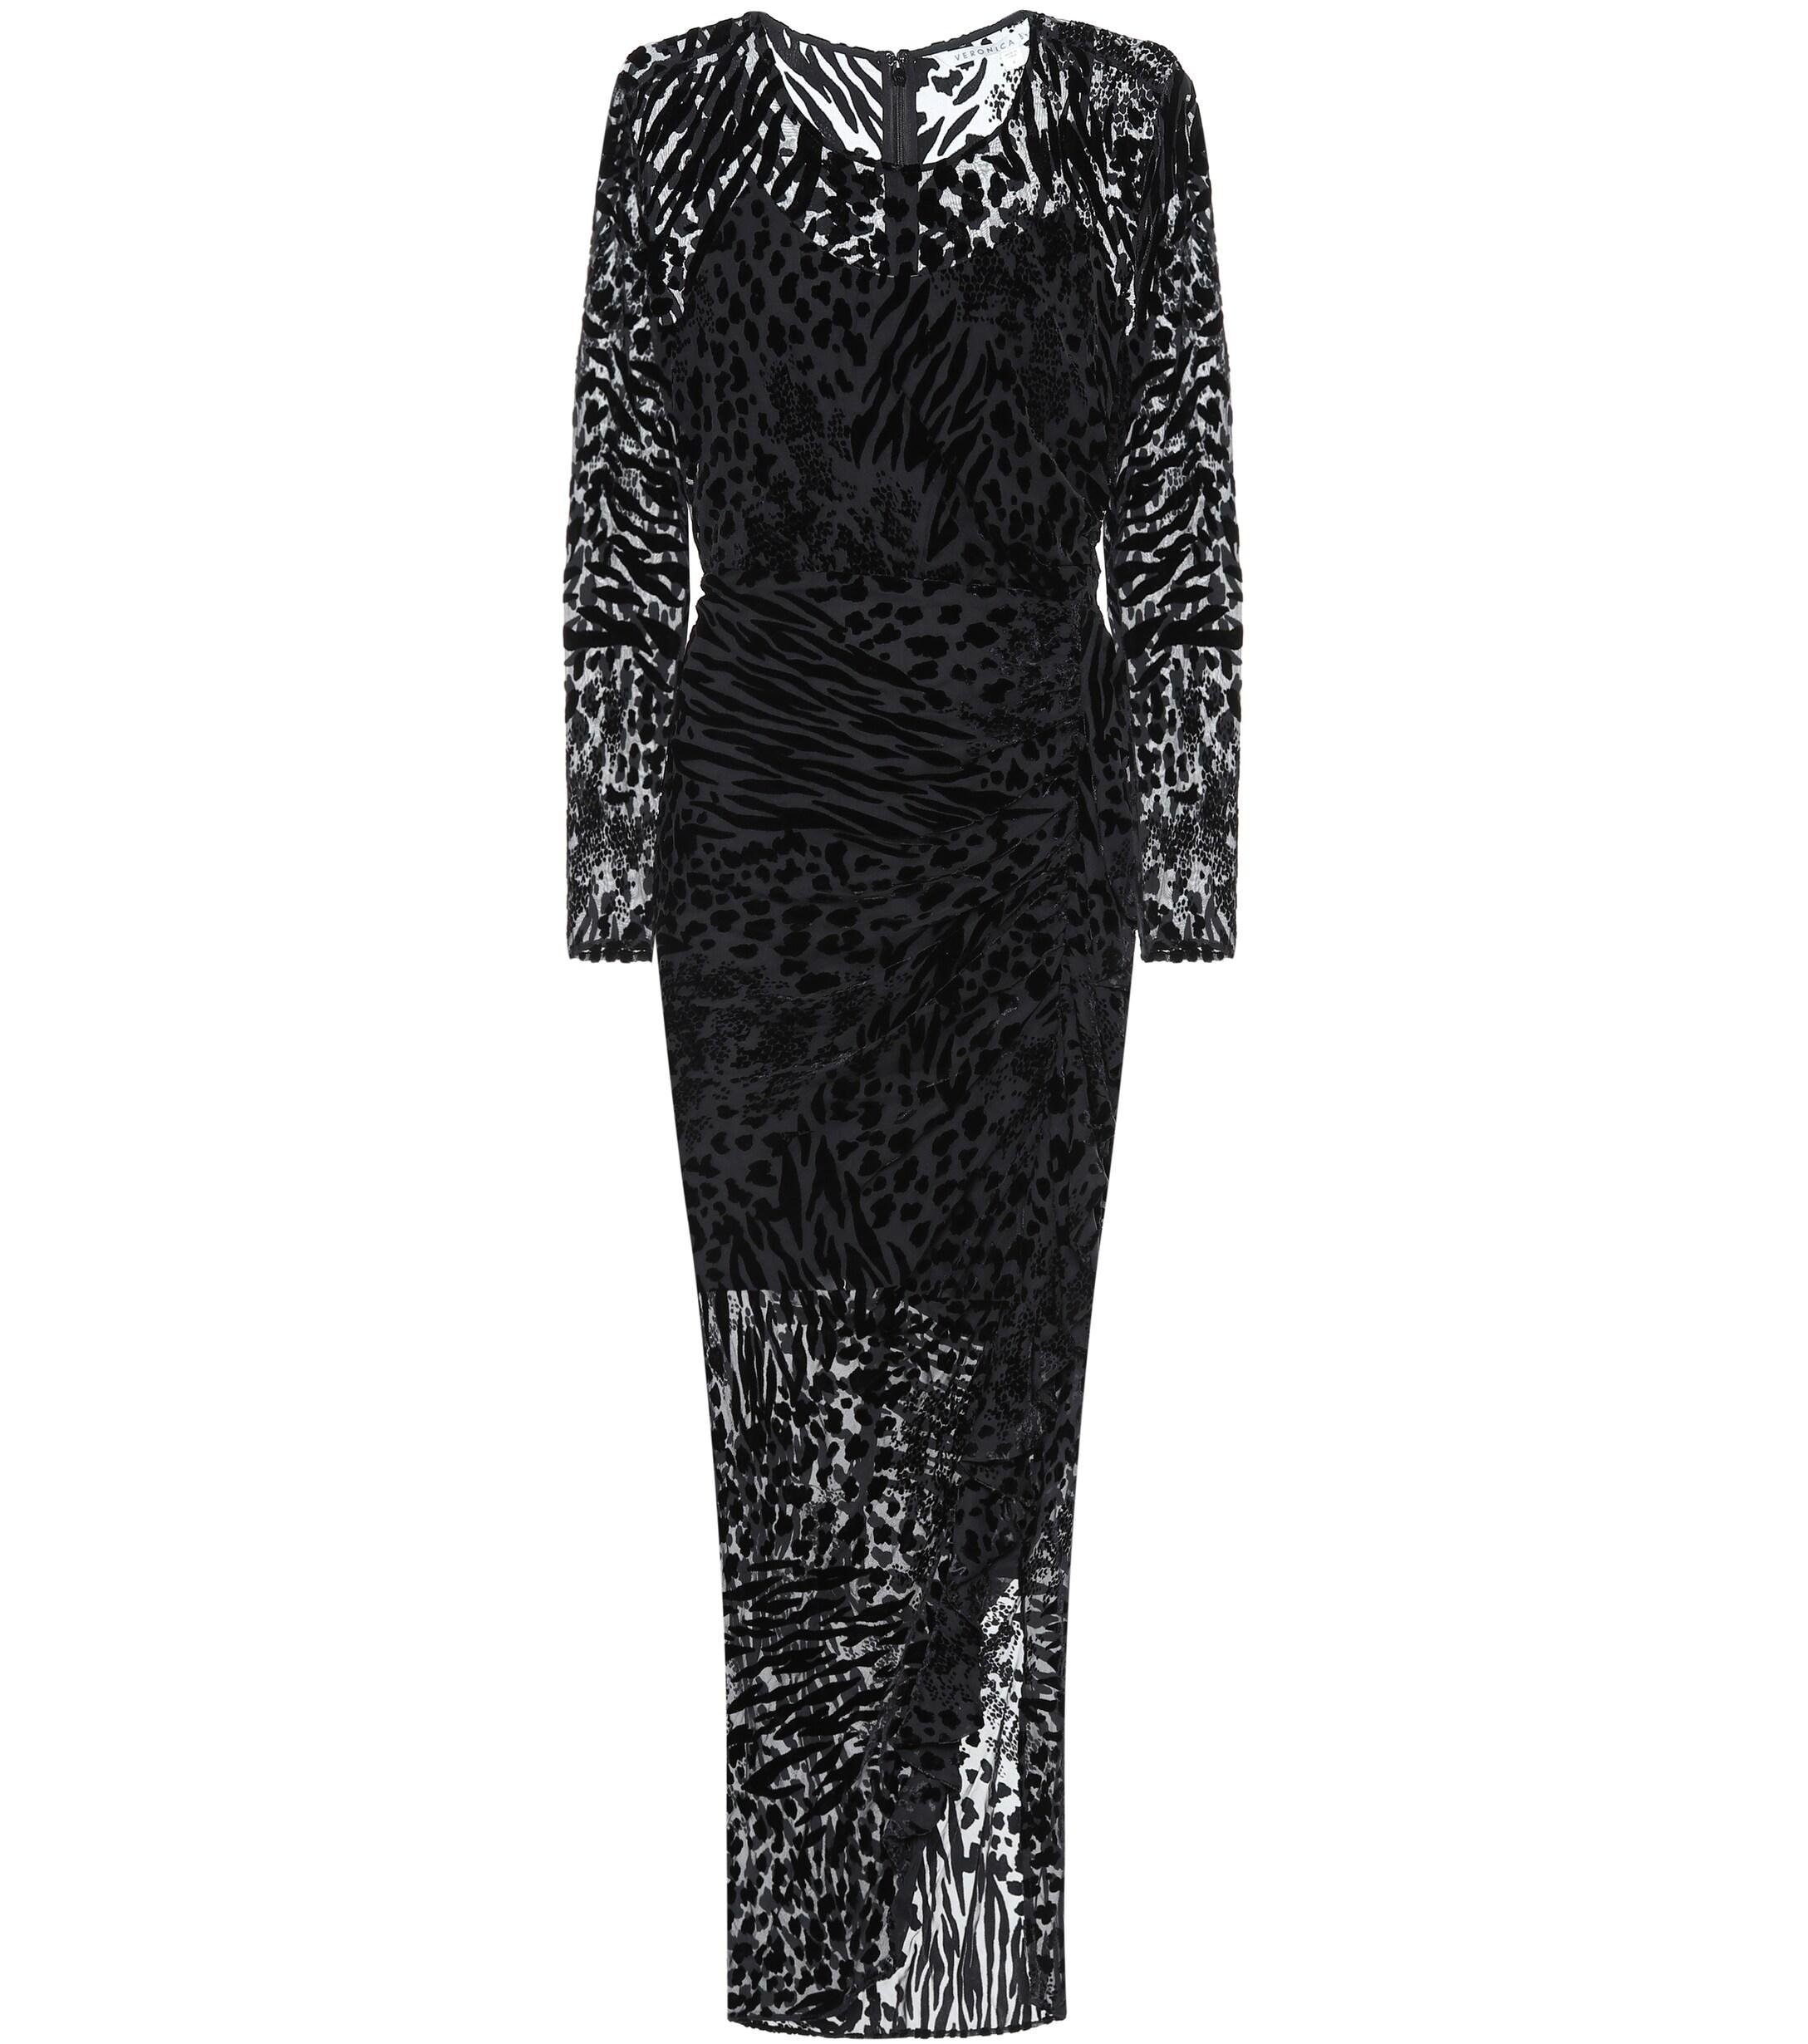 Veronica Beard Lala Lace Dress in Black - Lyst